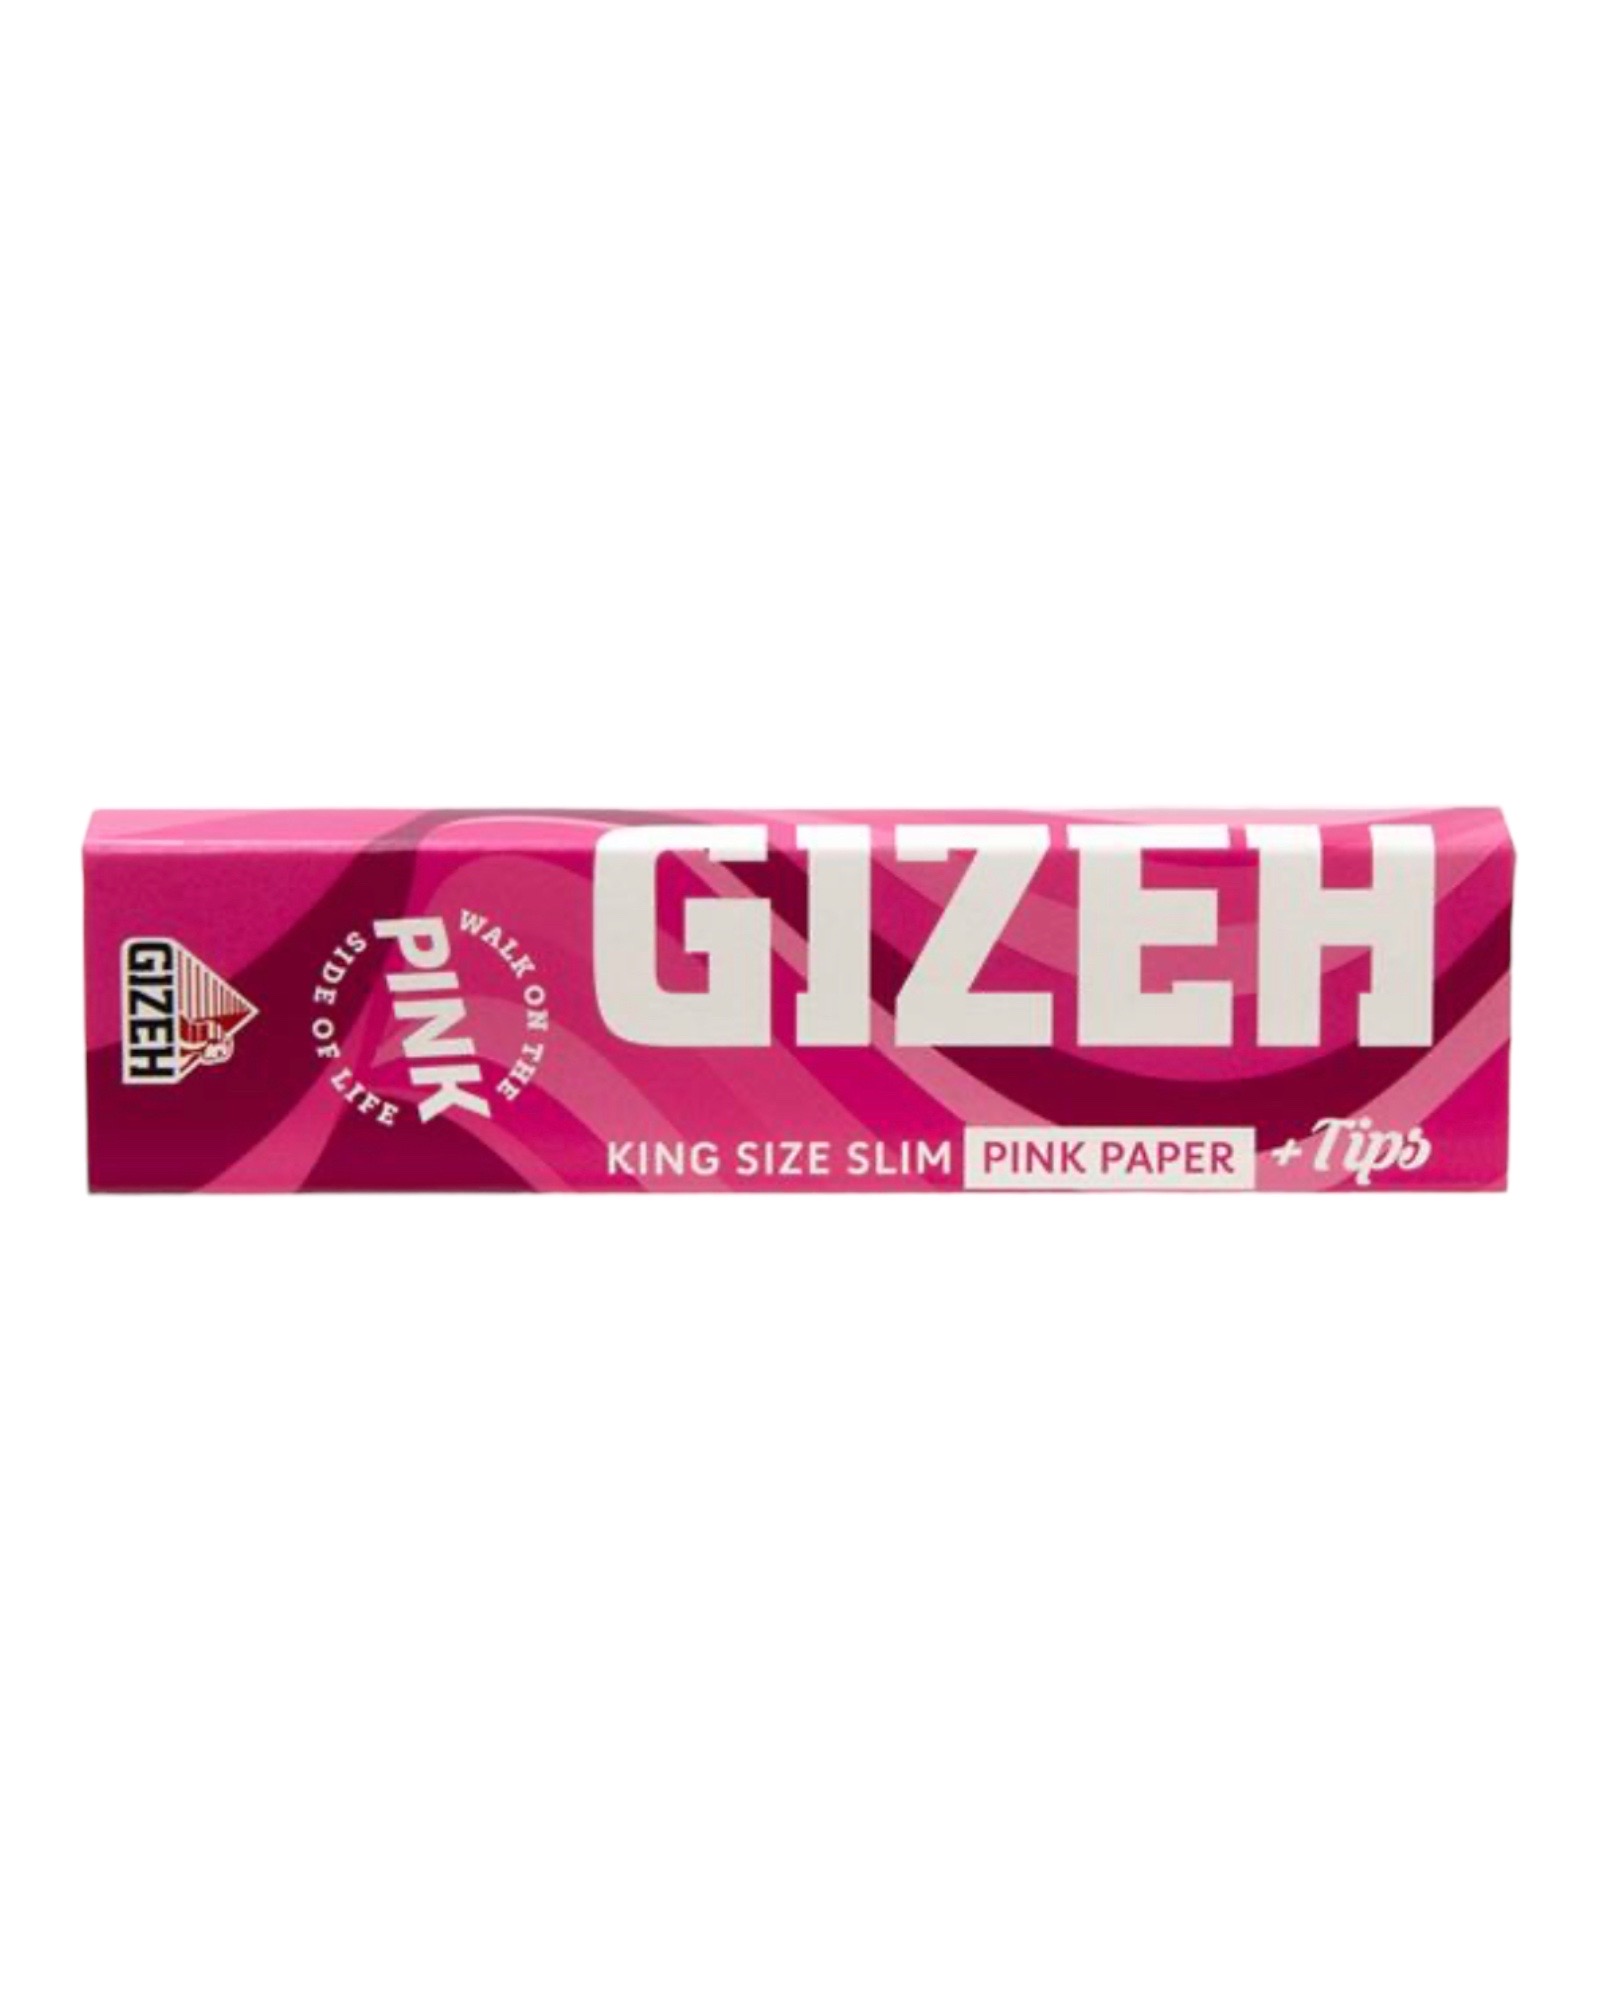 bestellen sie noch heute die Gizeh All Pink - King Size Slim + Tips